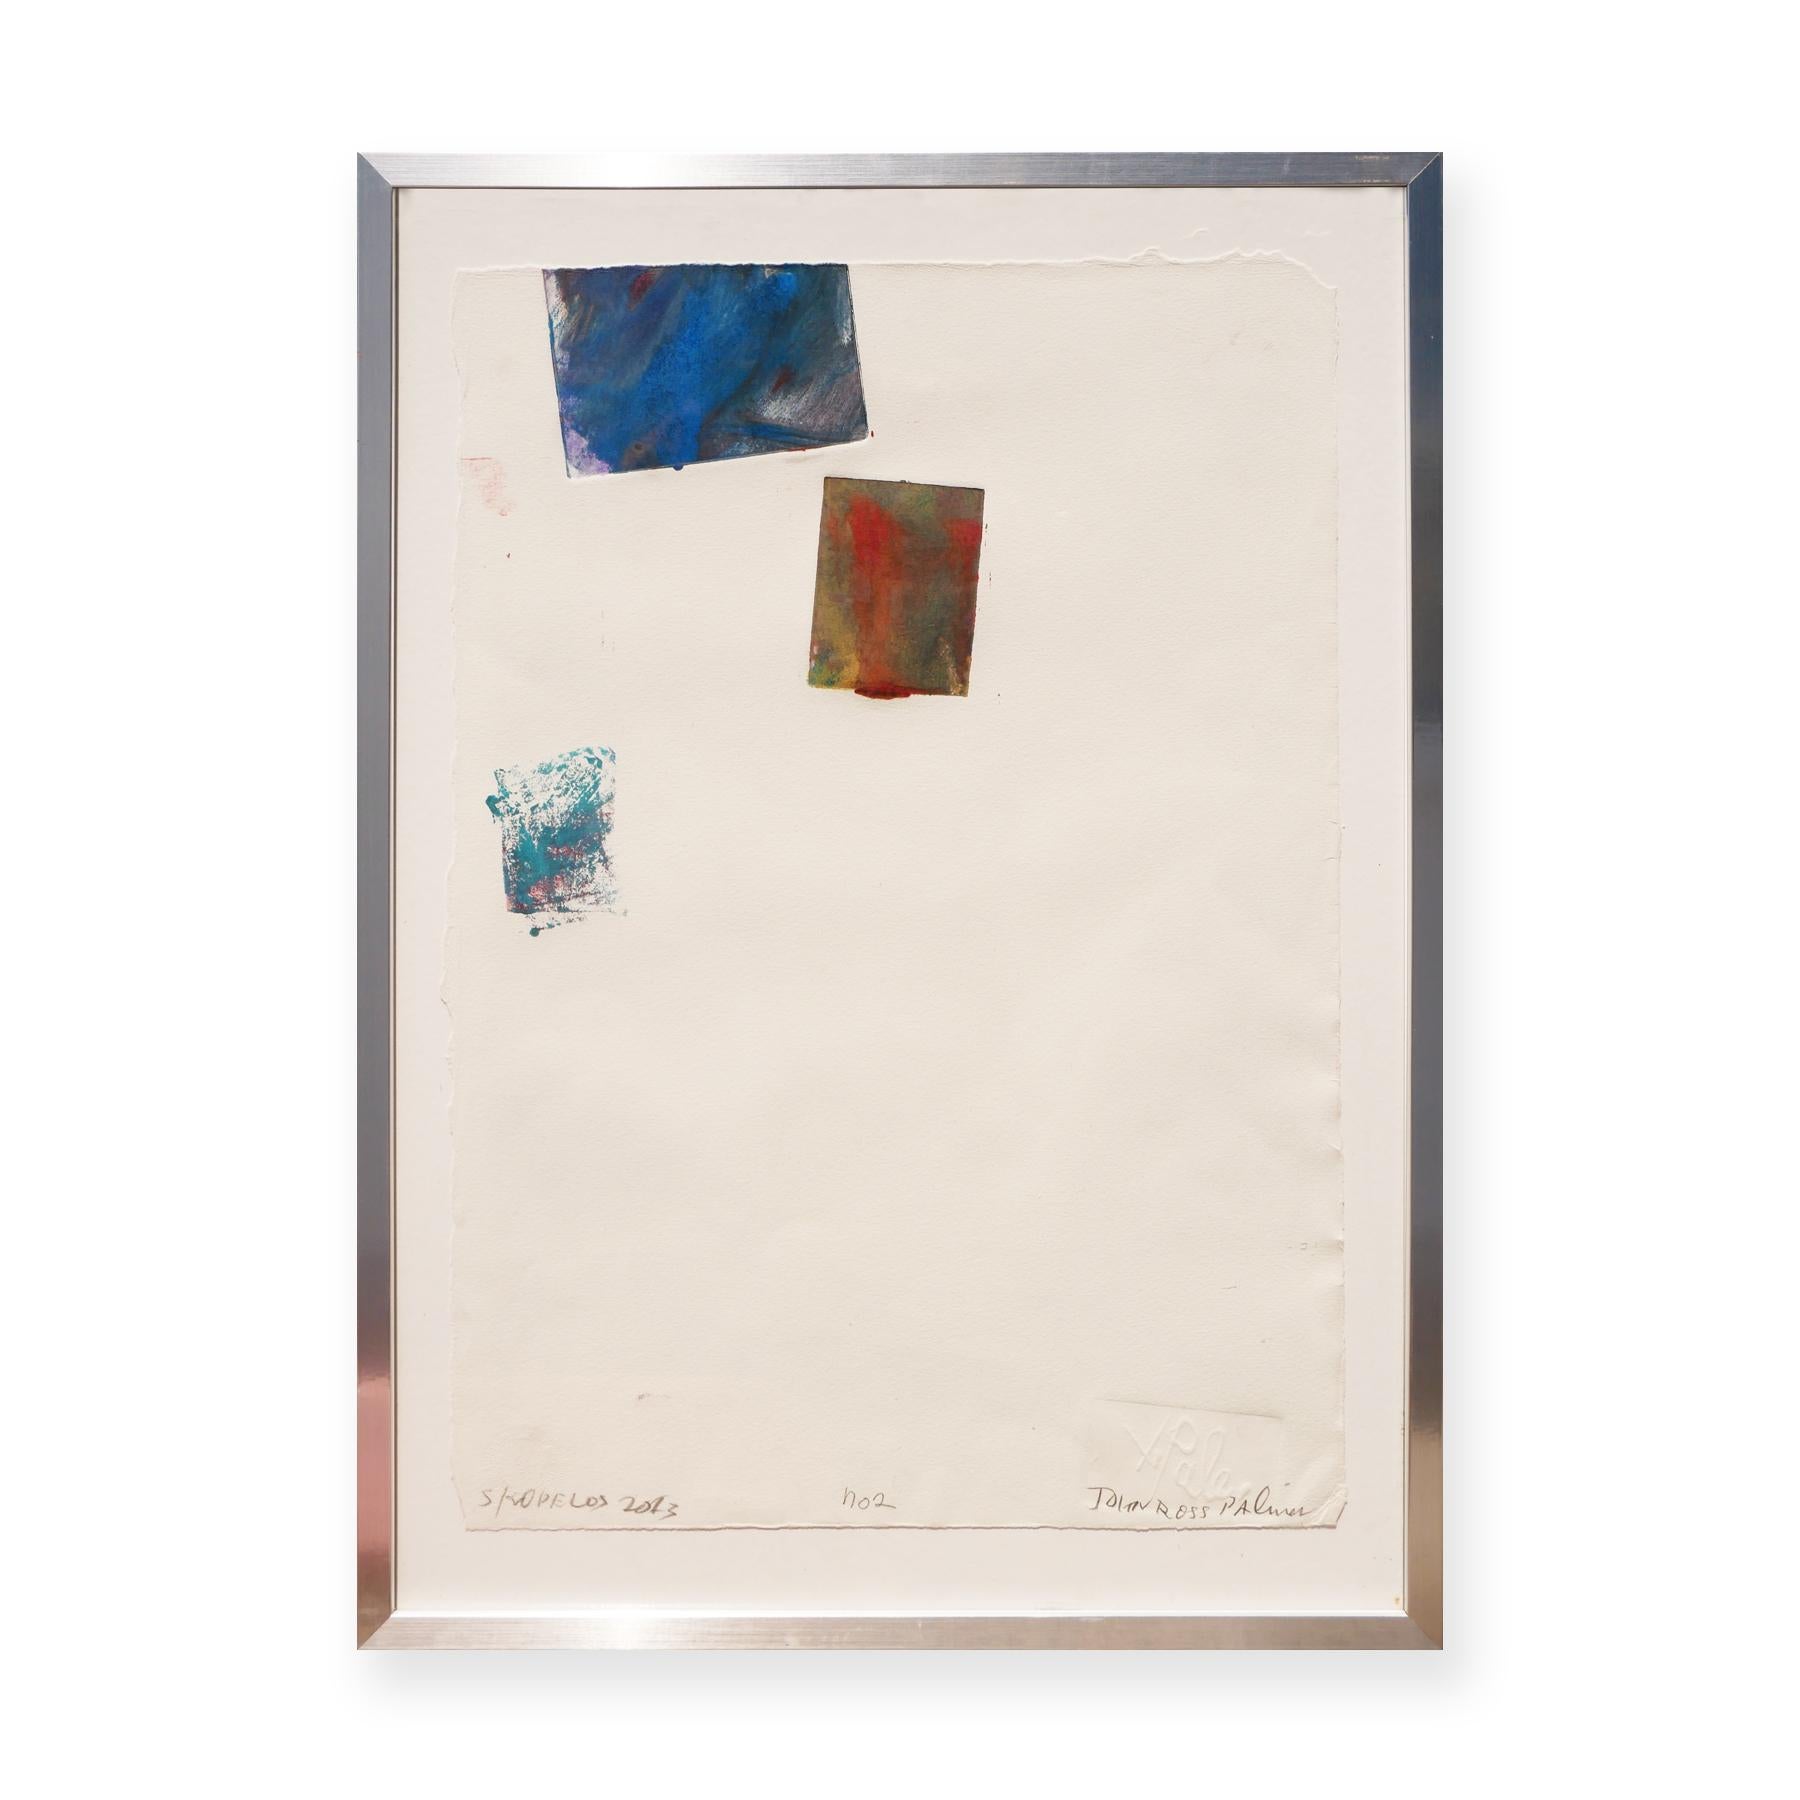 Skopolos Greece Monoprint No. 2 - Impression contemporaine abstraite orange, bleue et sarcelle - Contemporain Mixed Media Art par John Palmer